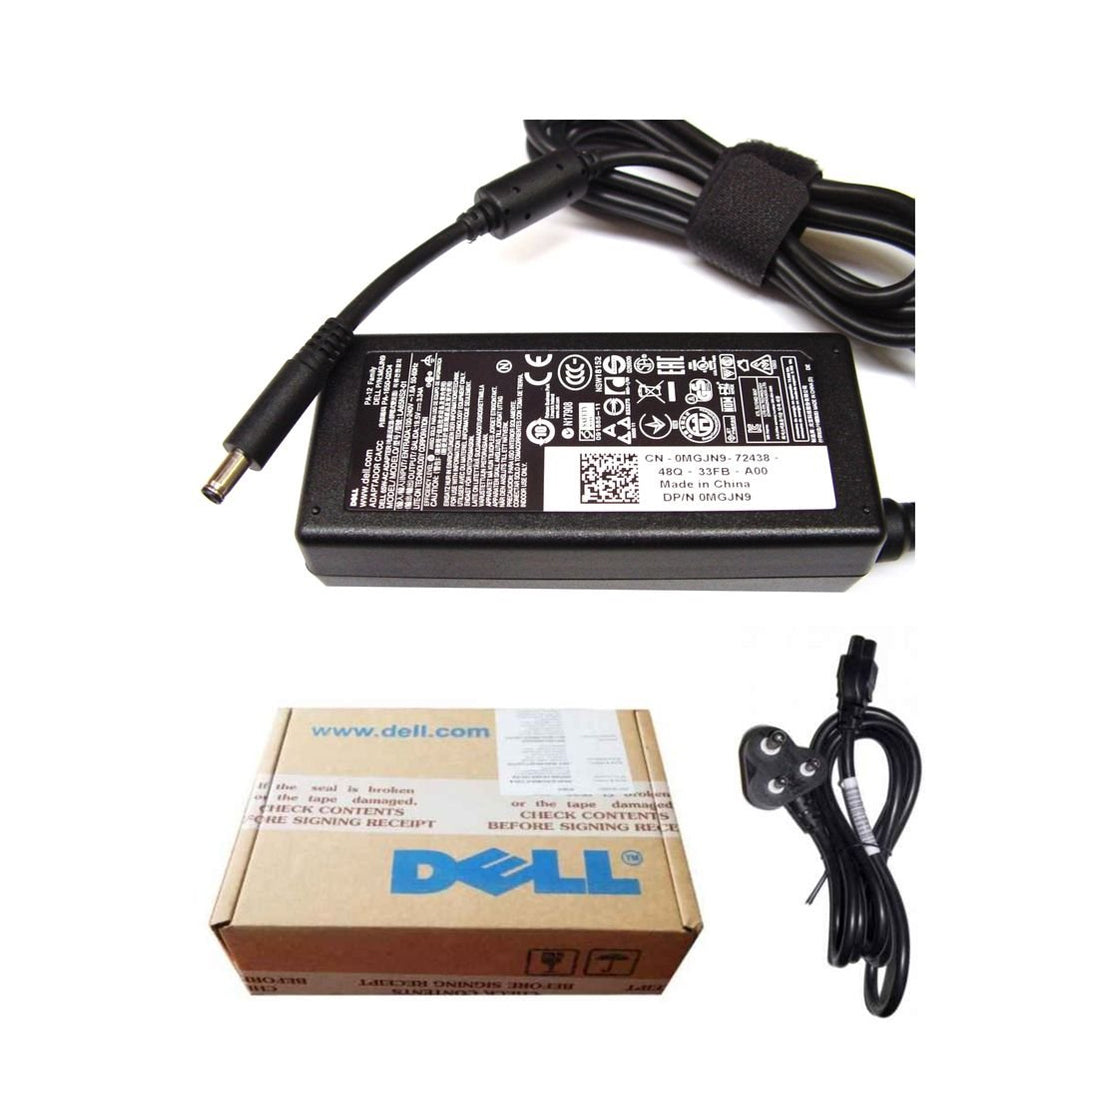 Dell ओरिजिनल 65W 19.5V 4.5mm पिन लैपटॉप चार्जर अडैप्टर Inspiron 15 5575 के लिए पावर कॉर्ड के साथ